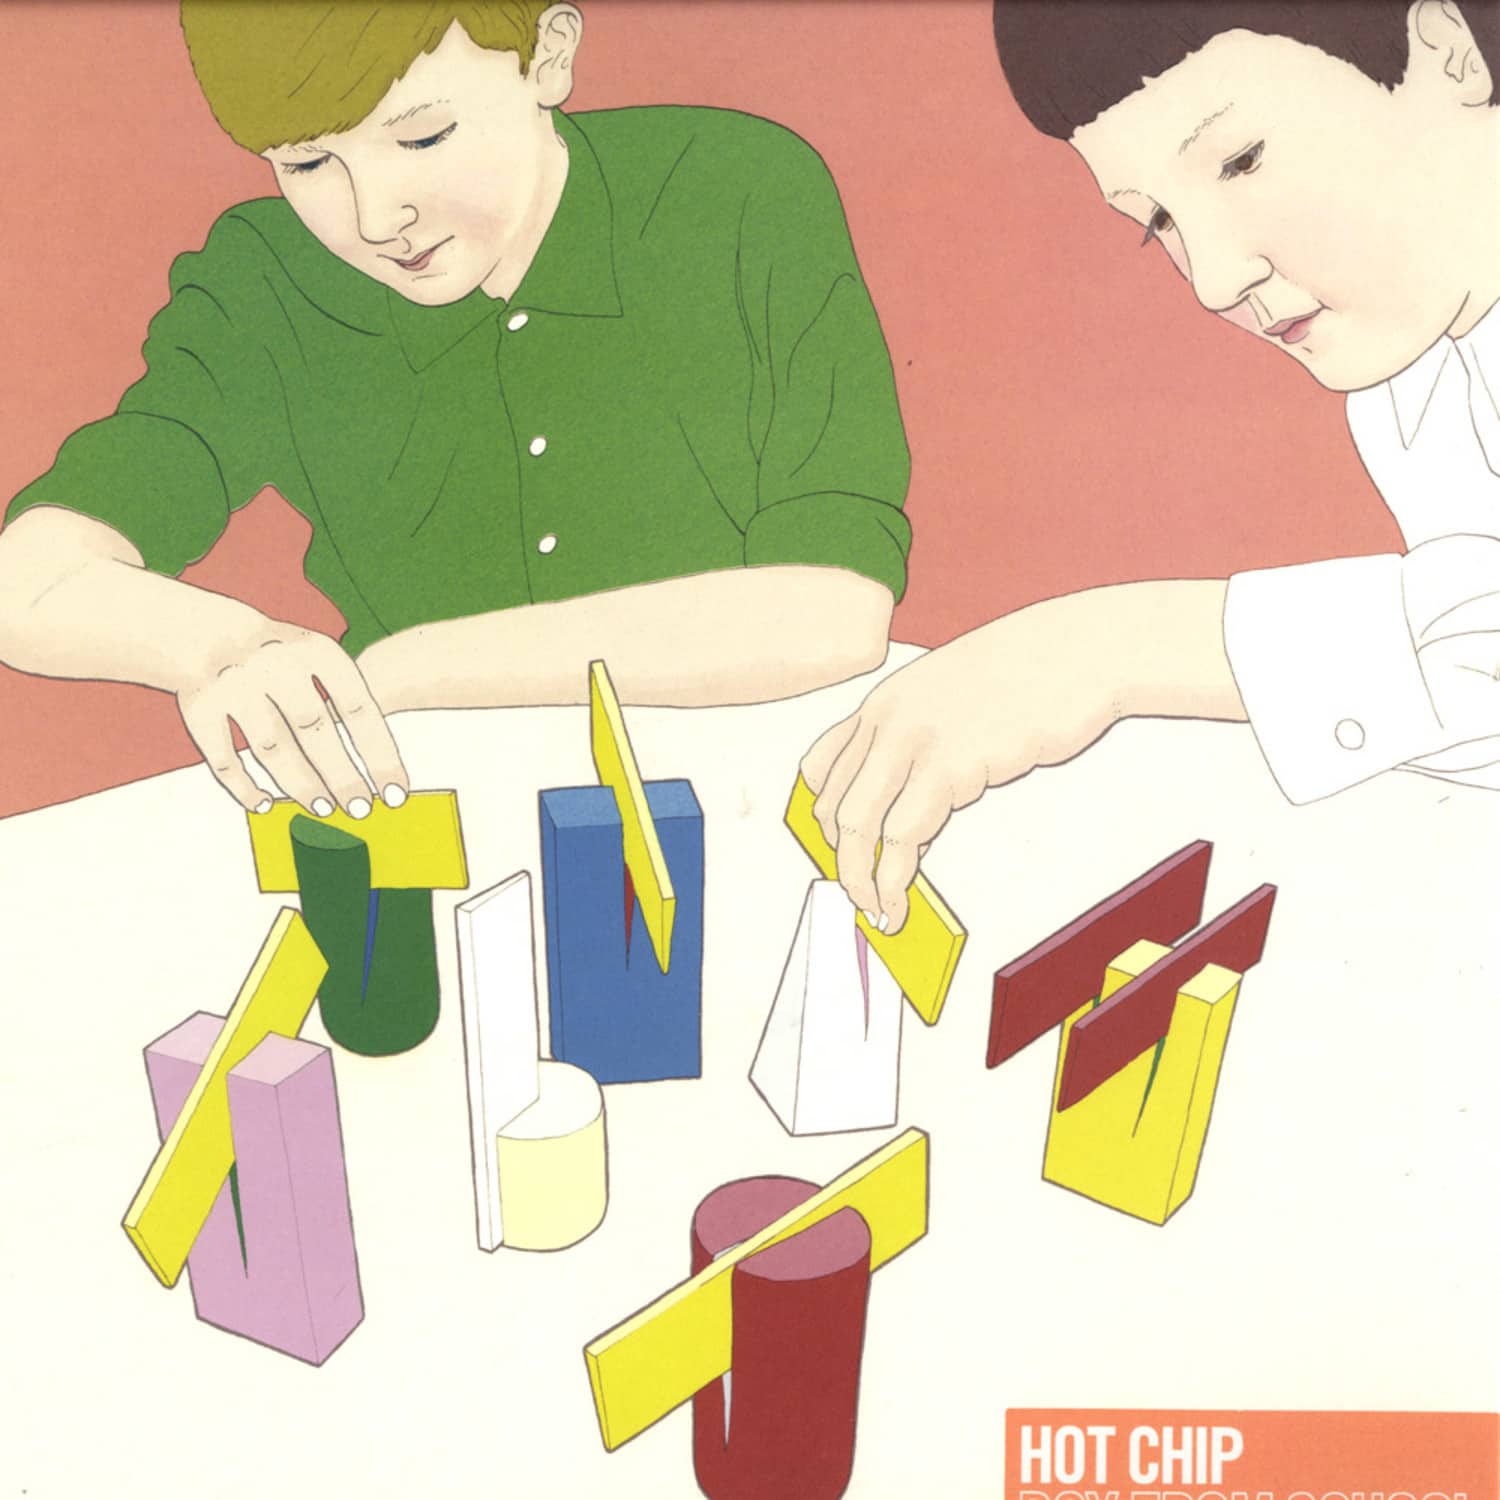 Hot Chip - BOY FROM SCHOOL